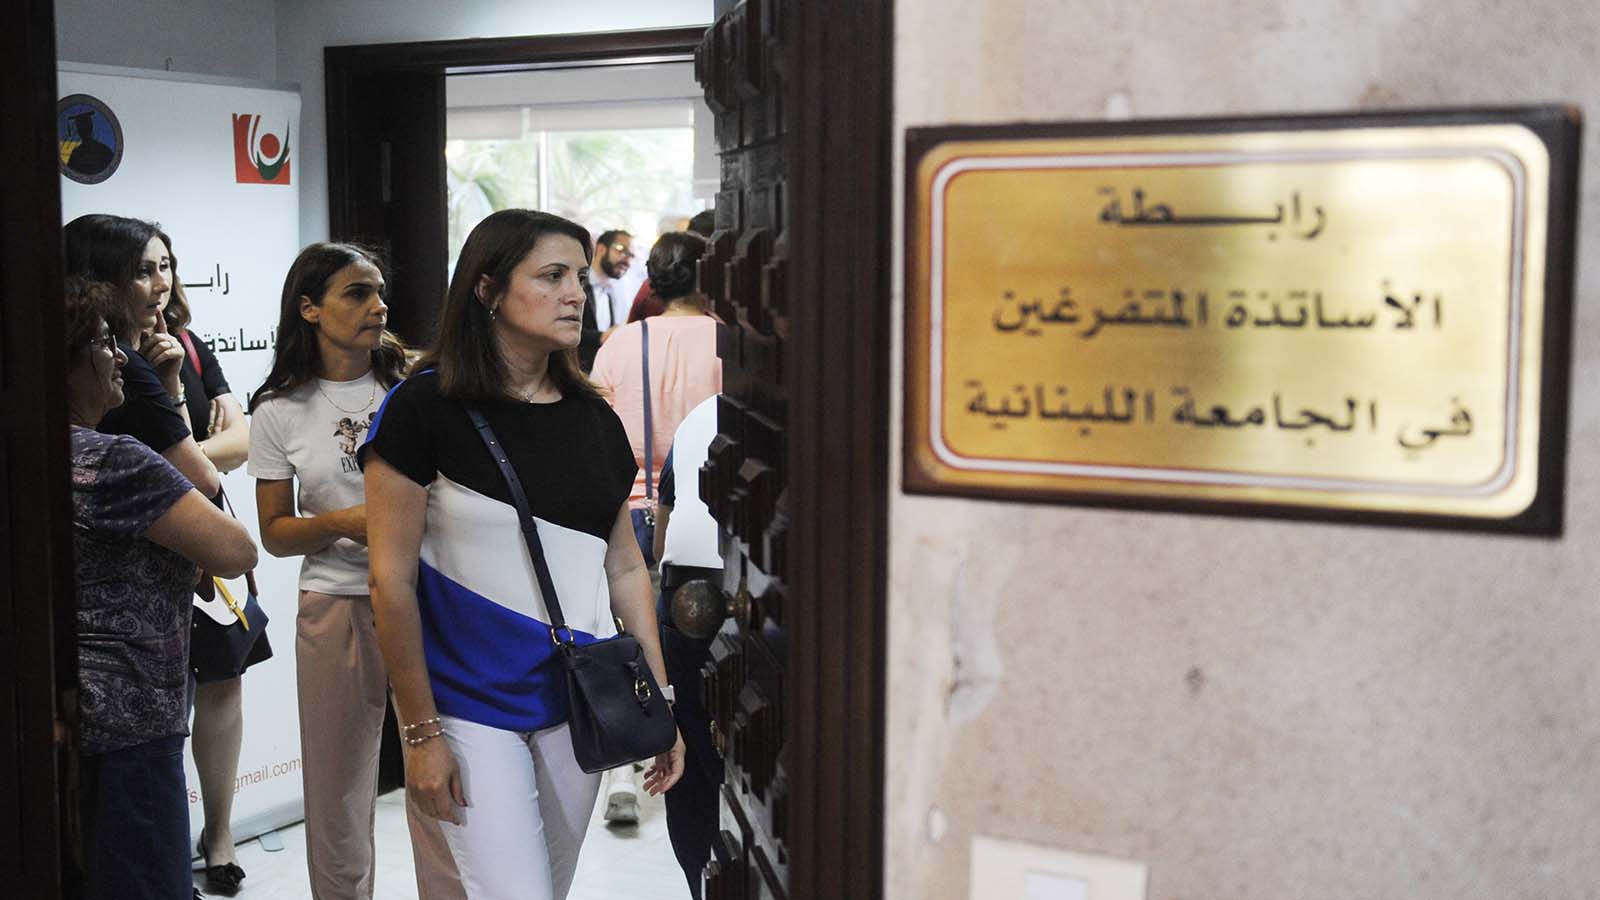 الأحزاب تتآمر بصفقة صندوق "الجامعة اللبنانية" التعاضدي